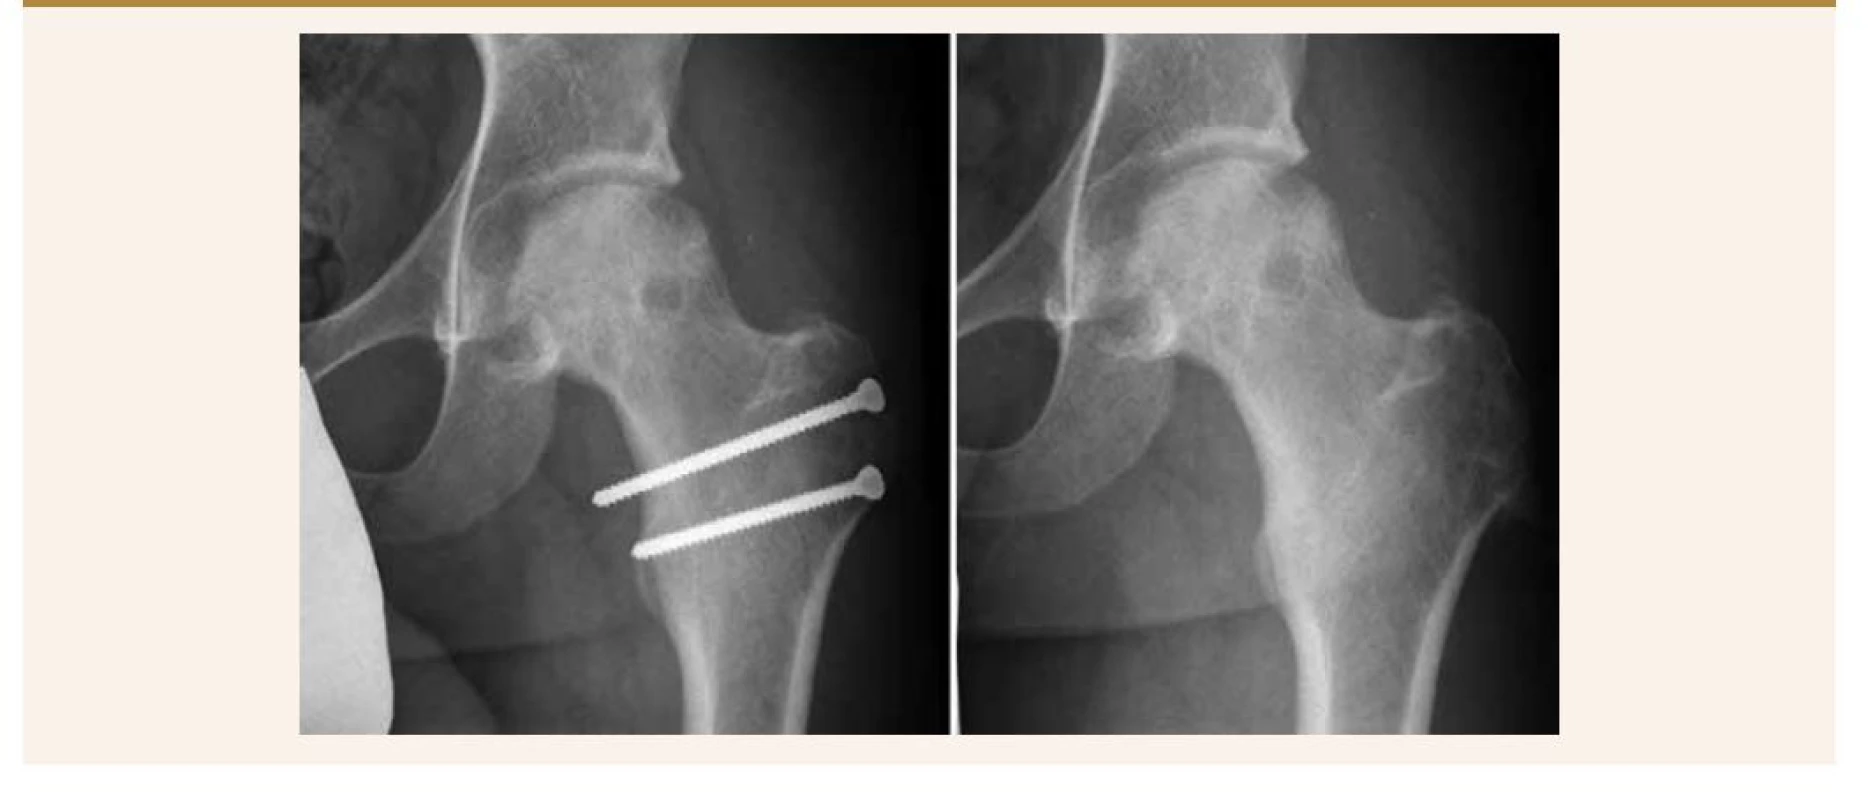 Vľavo: pacient pred extrakciou osteosyntetického materiálu. Vpravo: 12 mesiacov od operácie, po extrakcii
skrutiek.